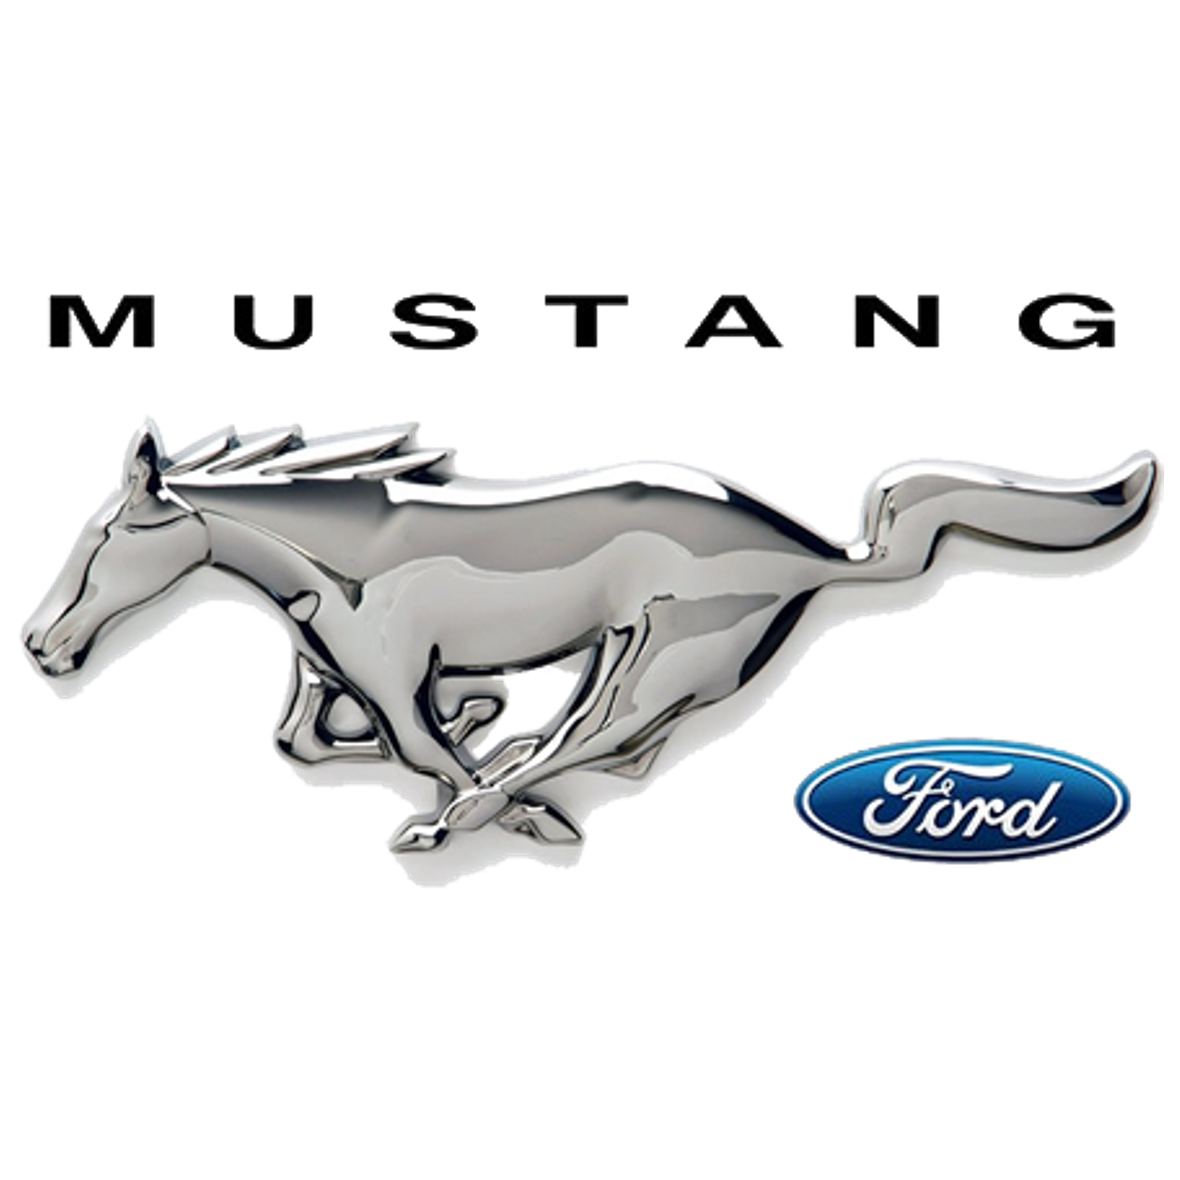 Ford Mustang logo Sportwagen mieten Kreis Düsseldorf Köln